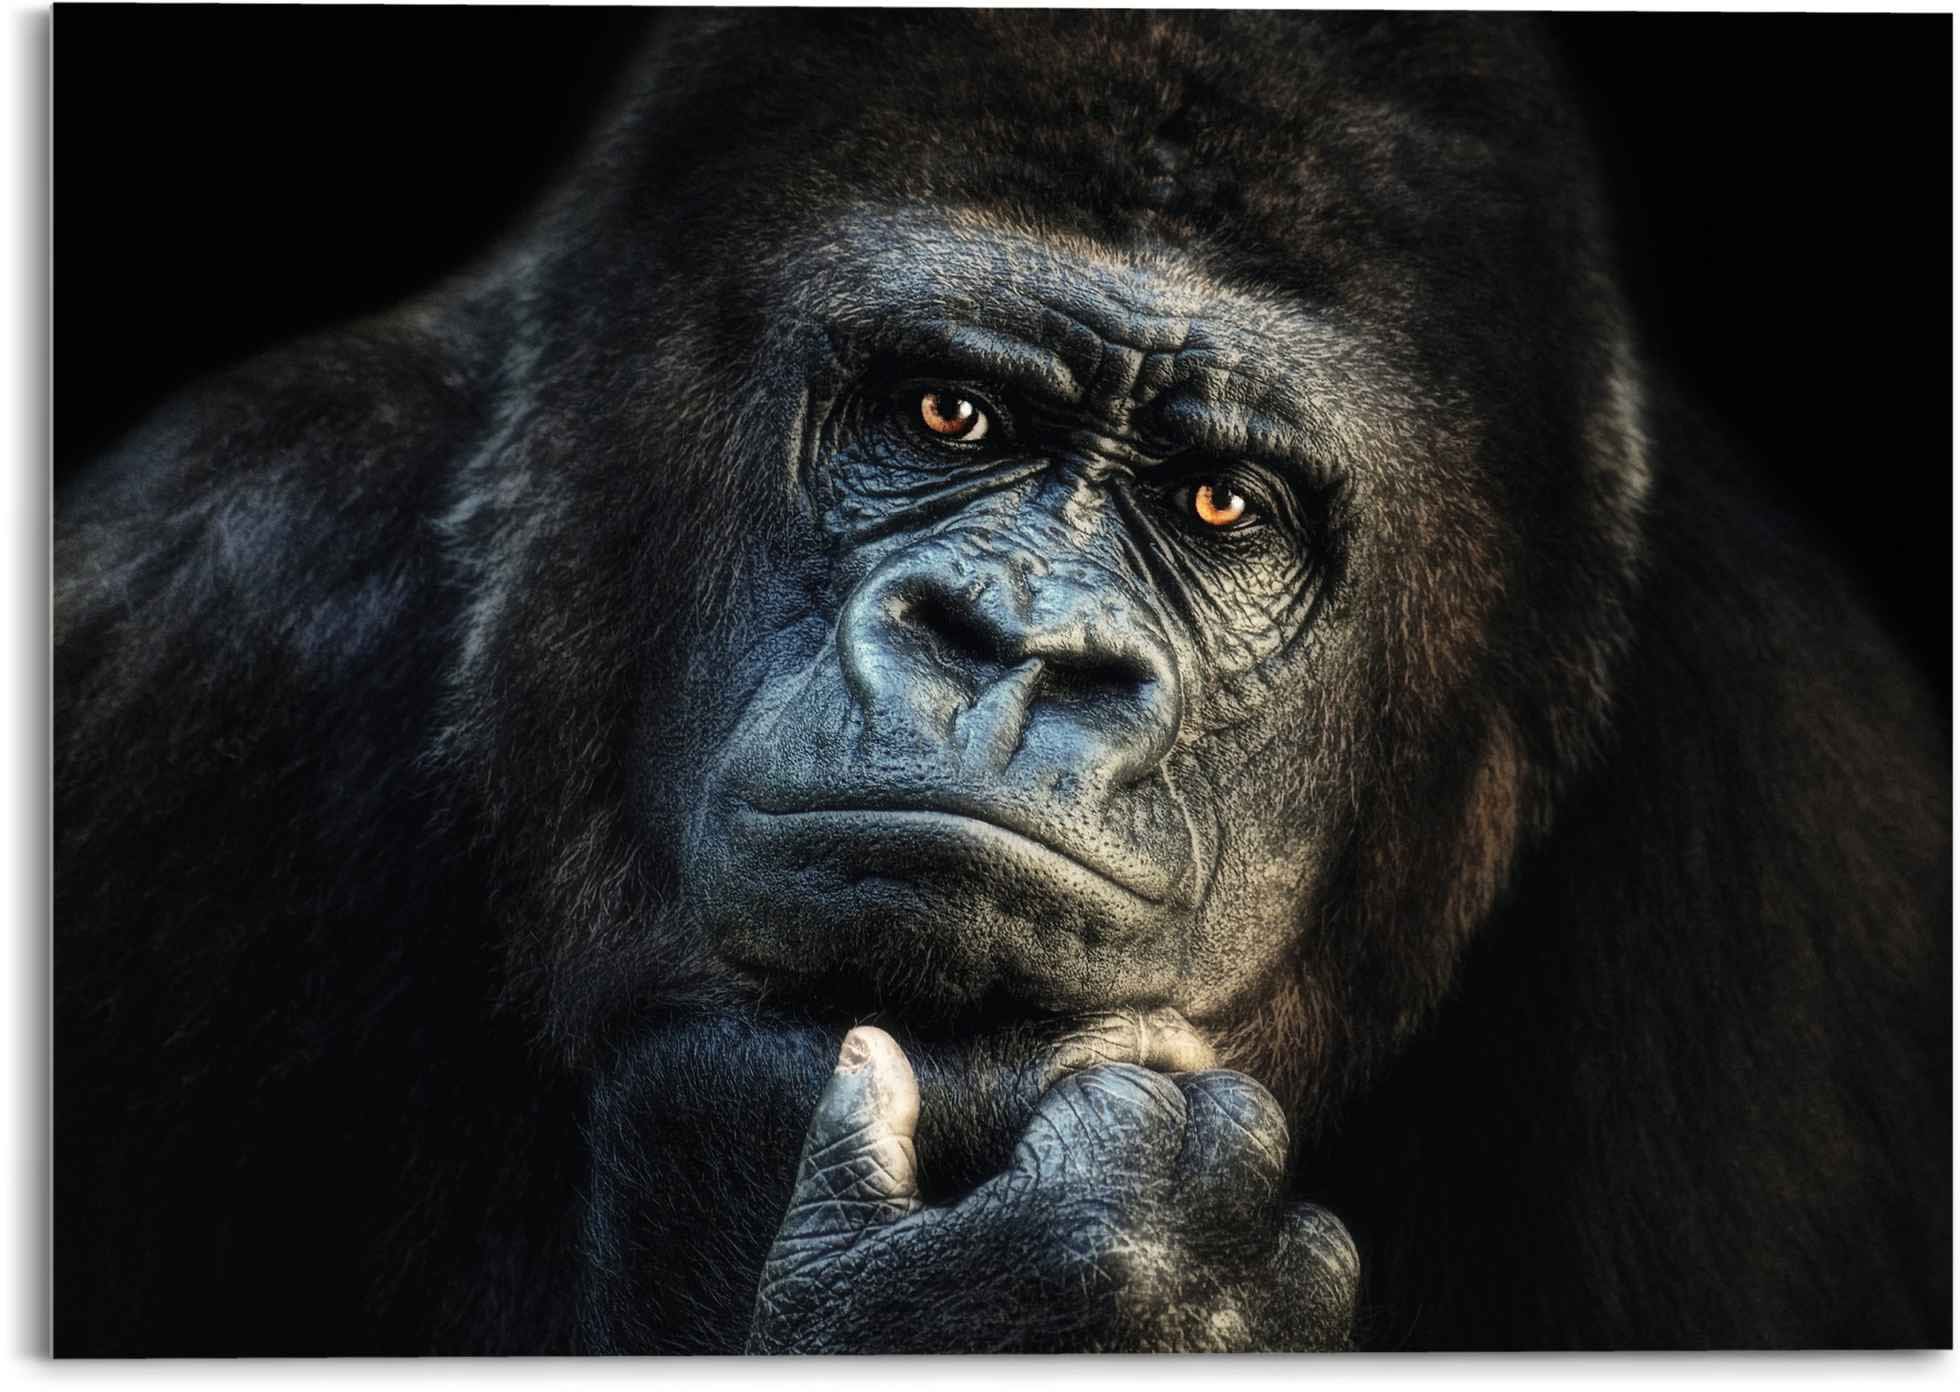 Glasbild »Glasbild Gorilla Affe - Kräftig - Nachdenklich«, Affen, (1 St.)